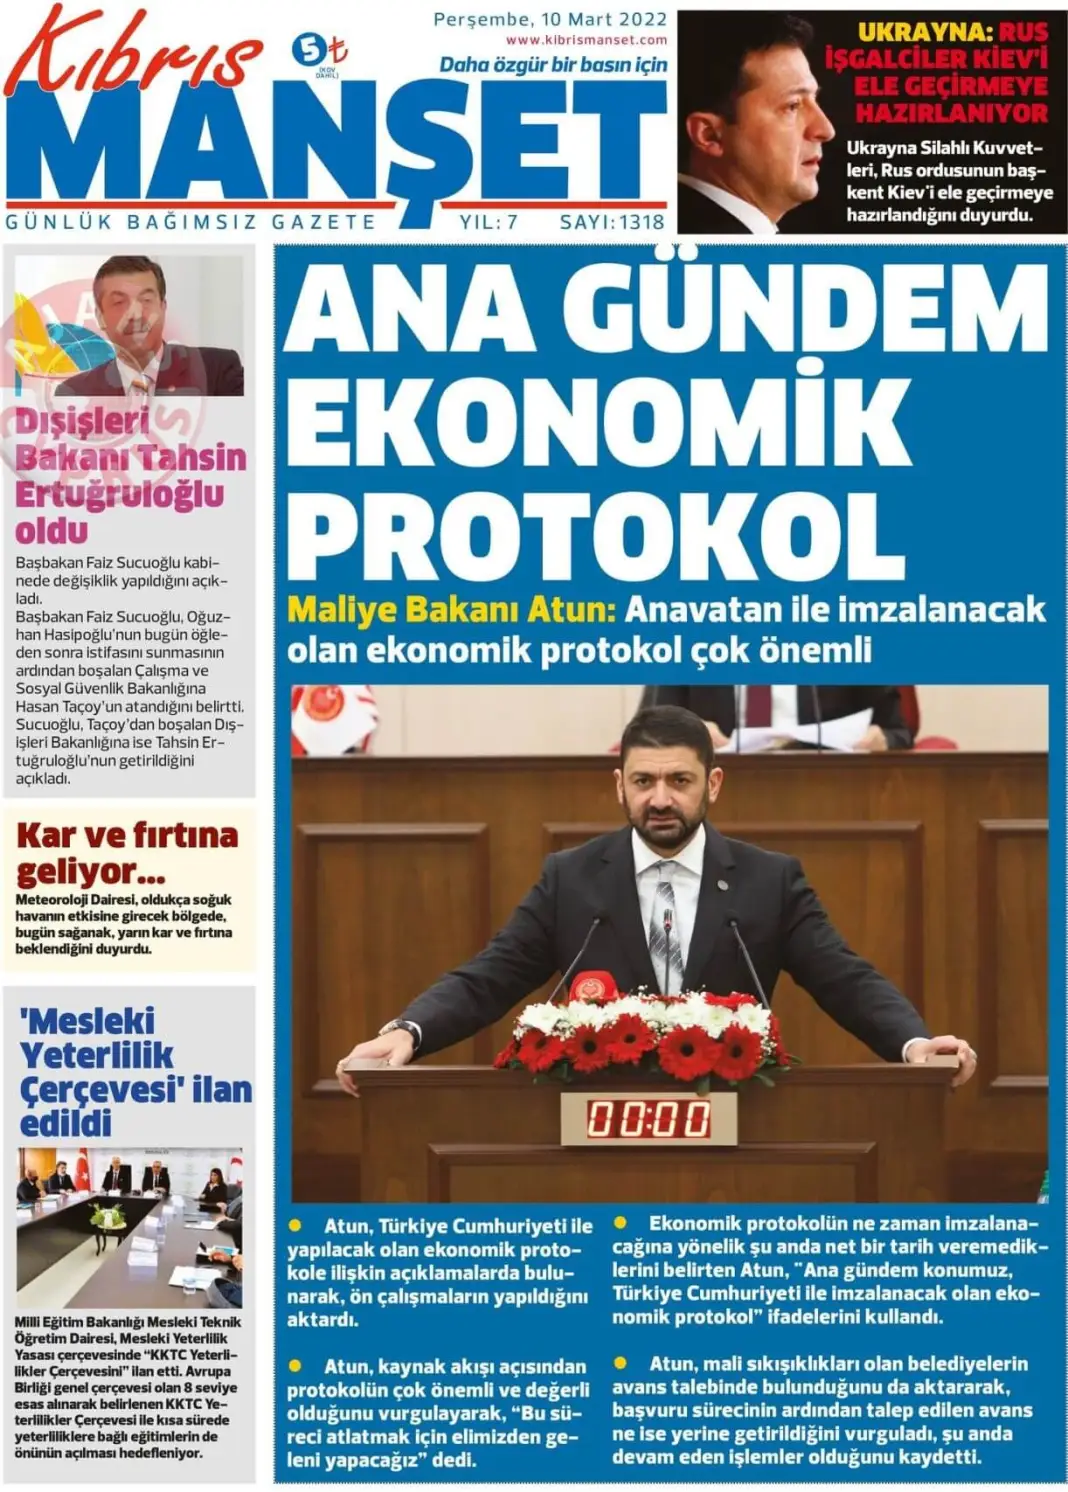 10 Mart 2022 Perşembe Gazete Manşetleri 12